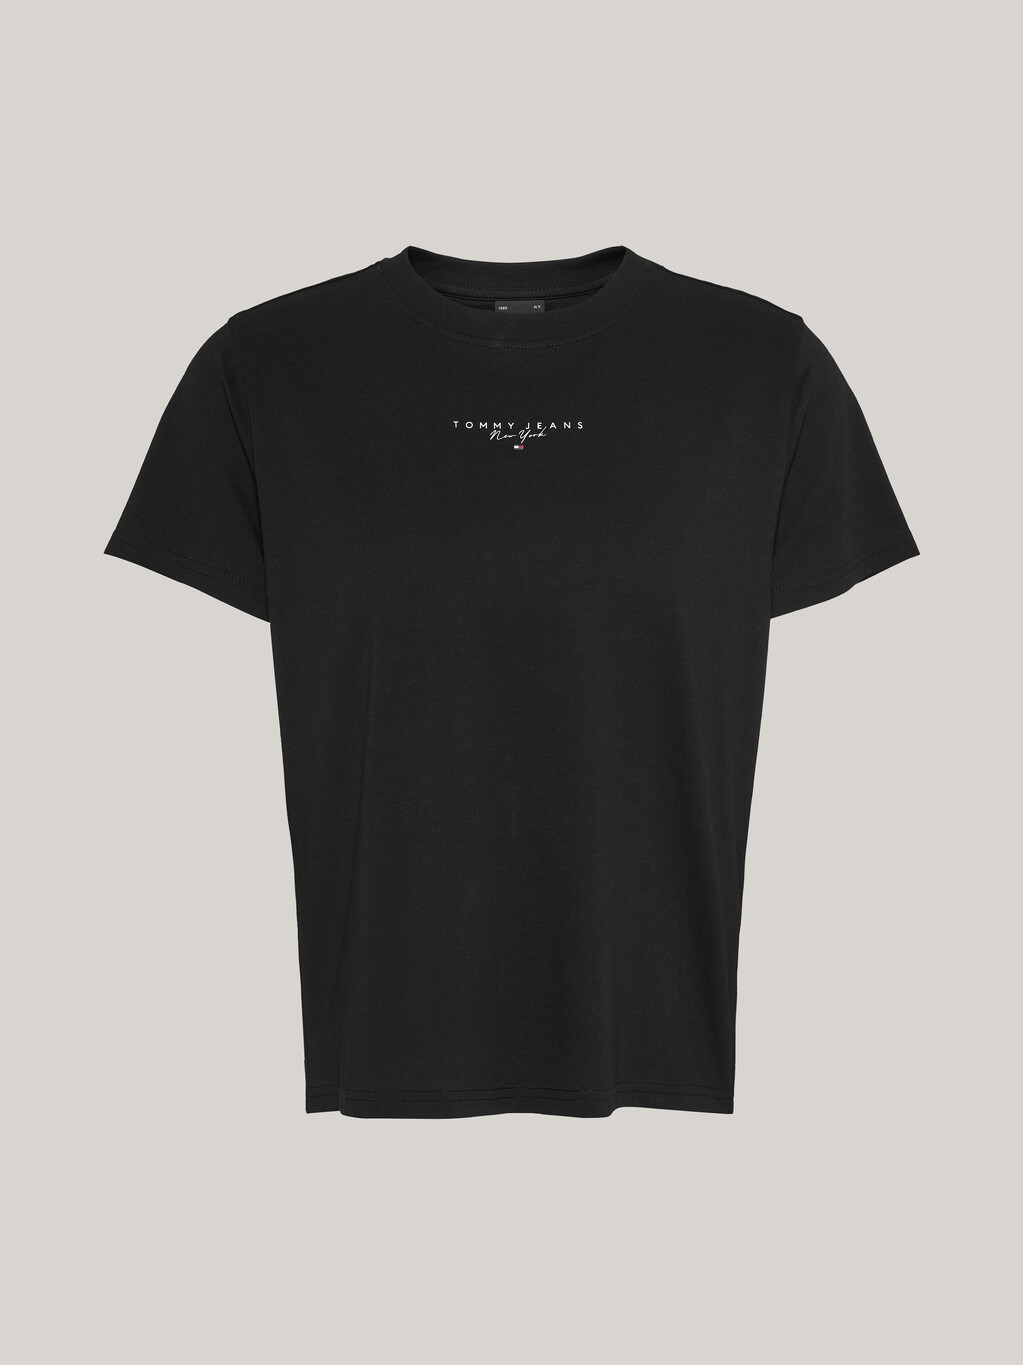 Essential 基本款標誌 T 恤, Black, hi-res